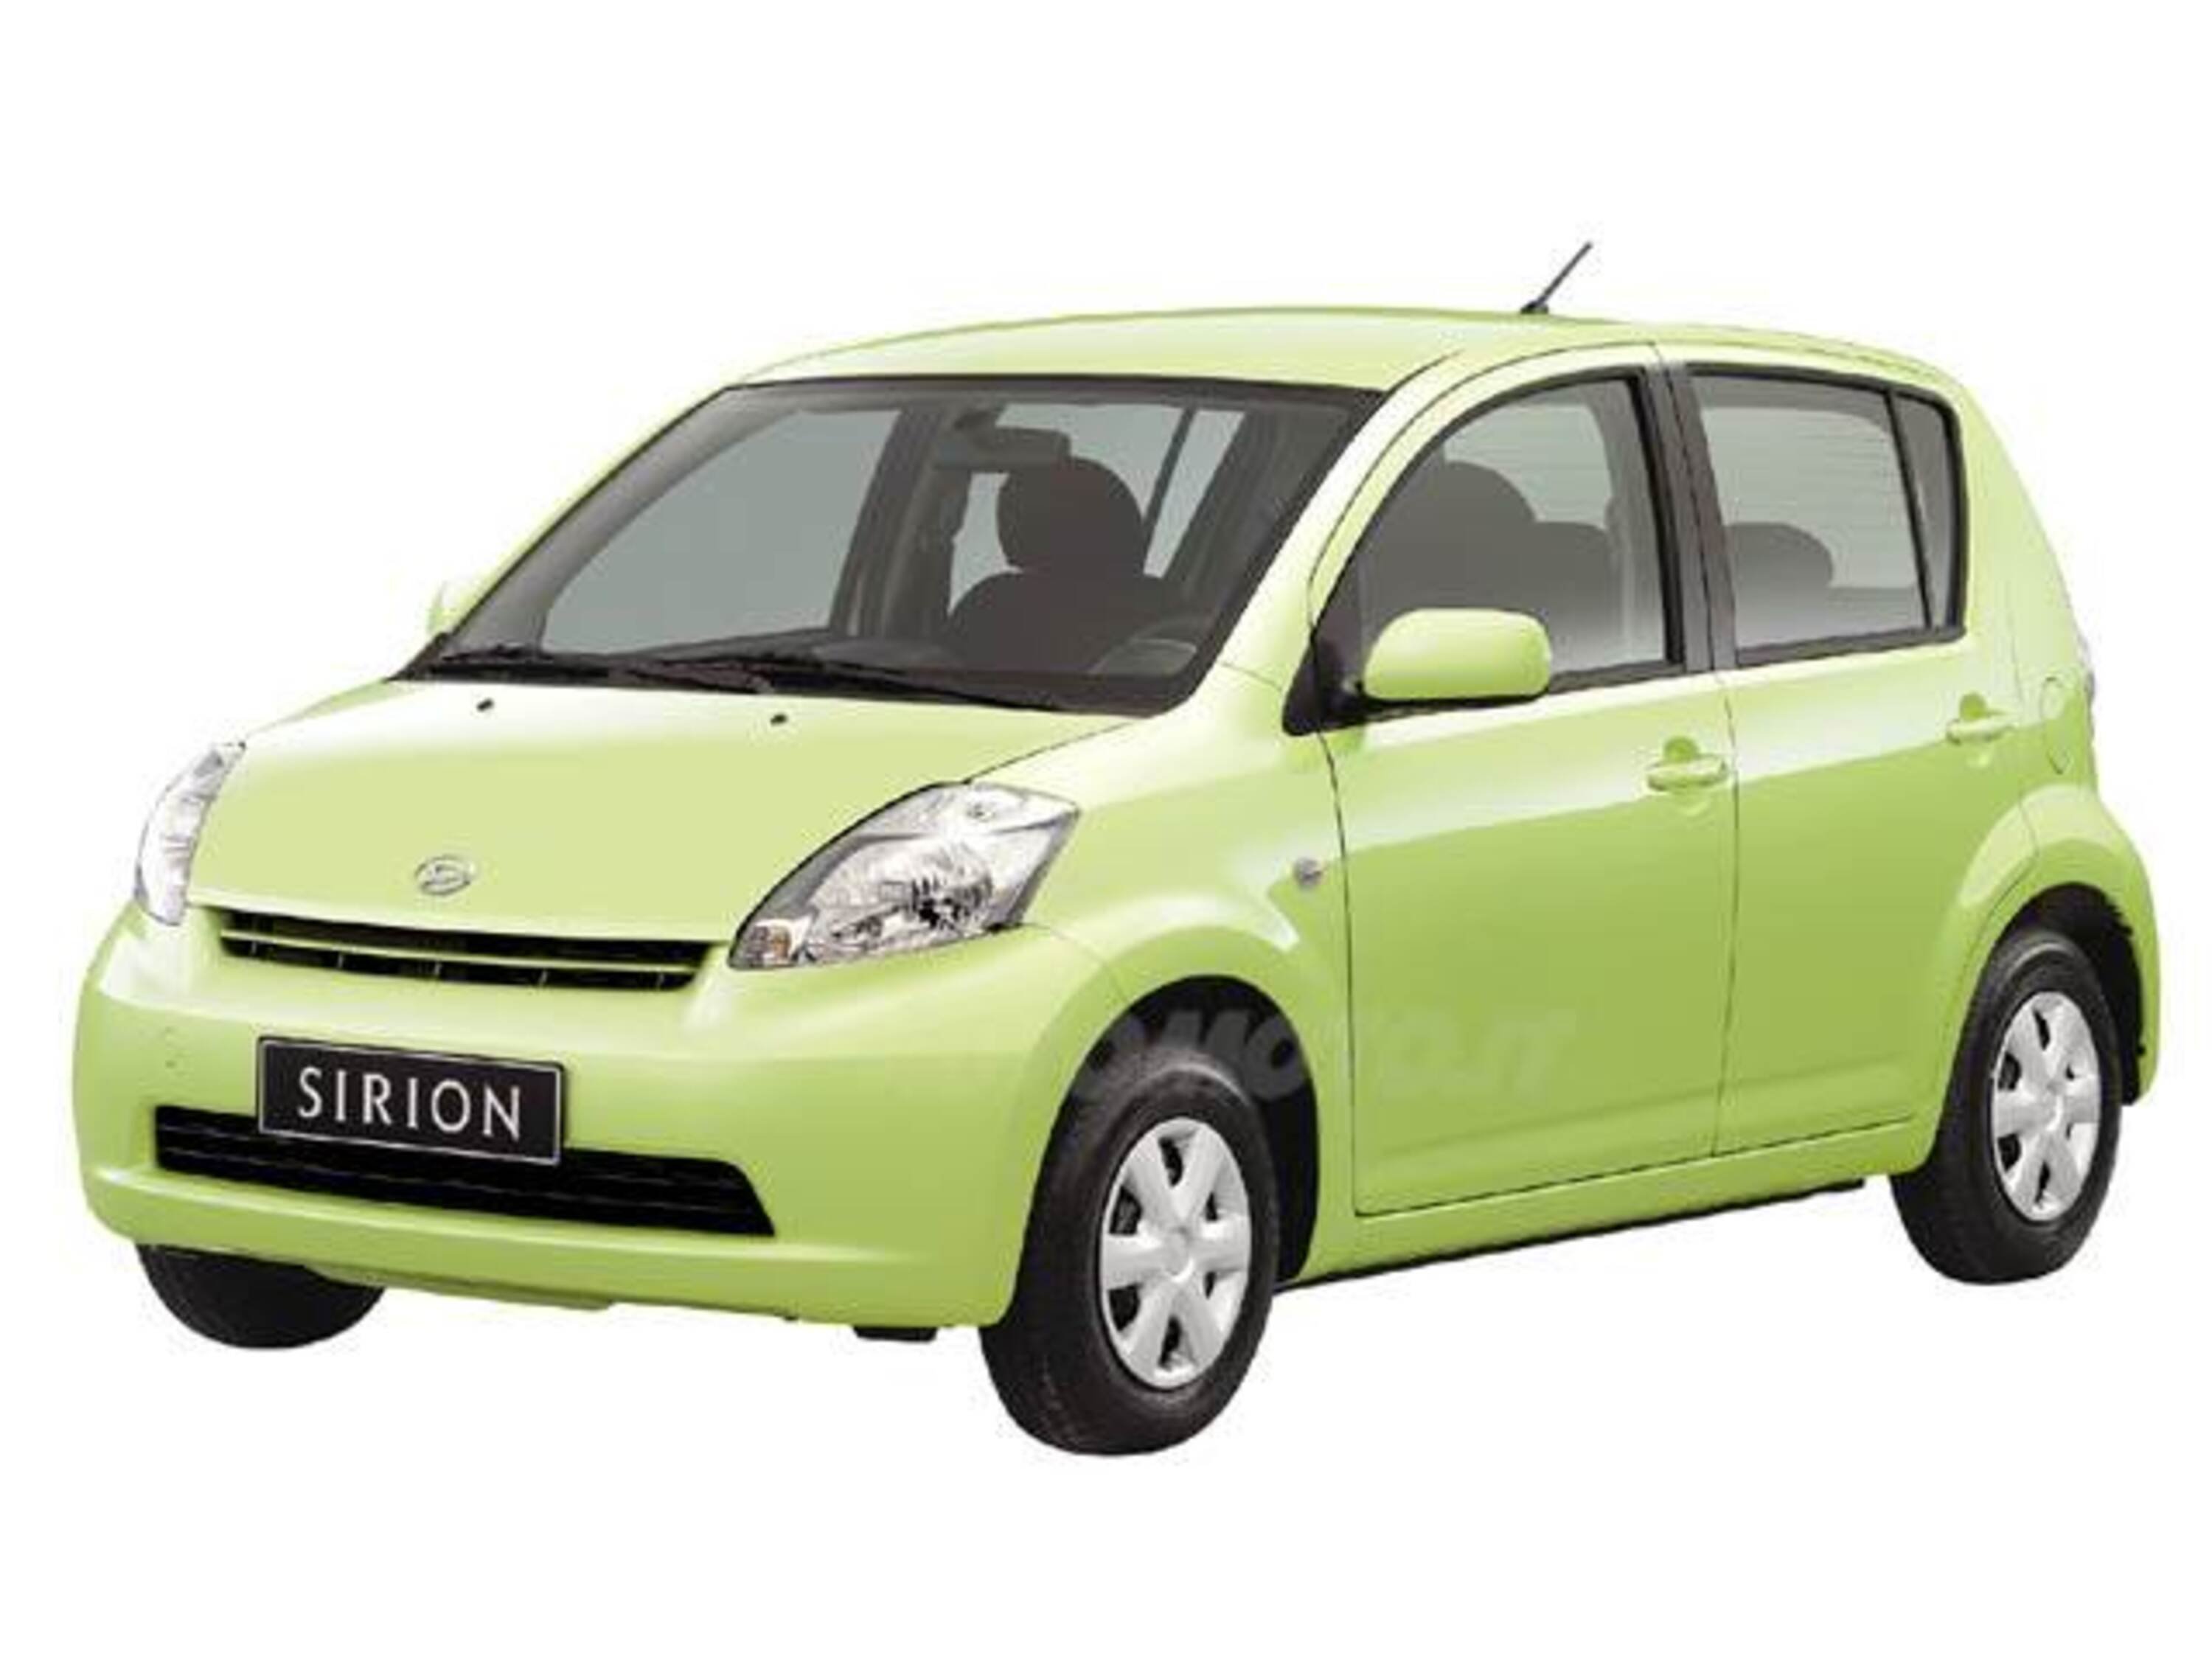 Daihatsu Sirion 1.3 16V Mio Sport Green Powered